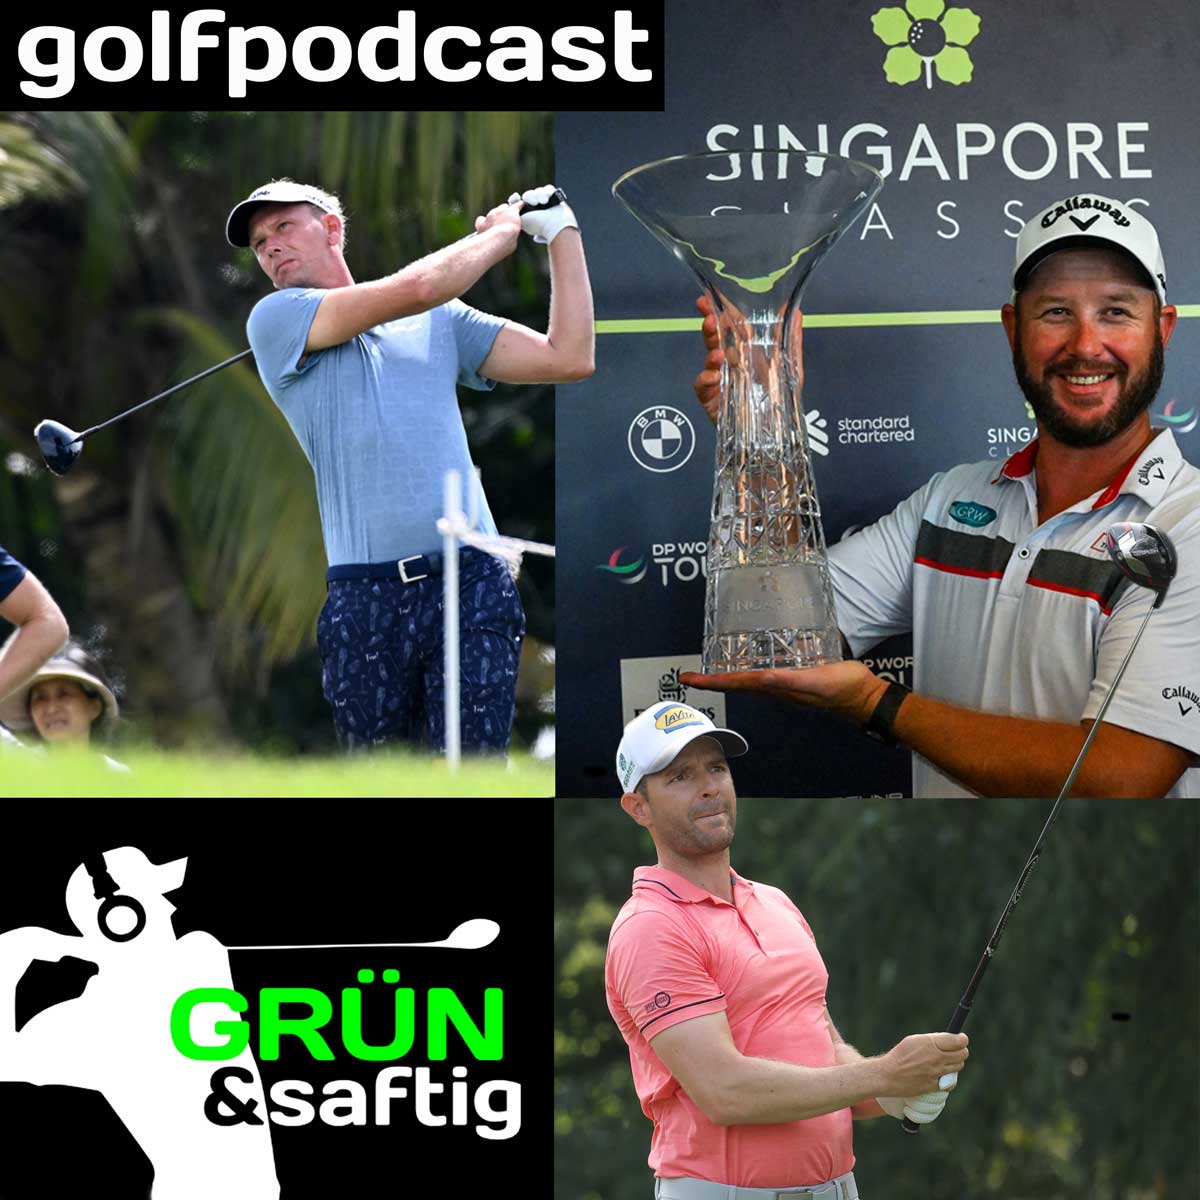 Grün & saftig - der Golfpodcast von GOLF'n'STYLE